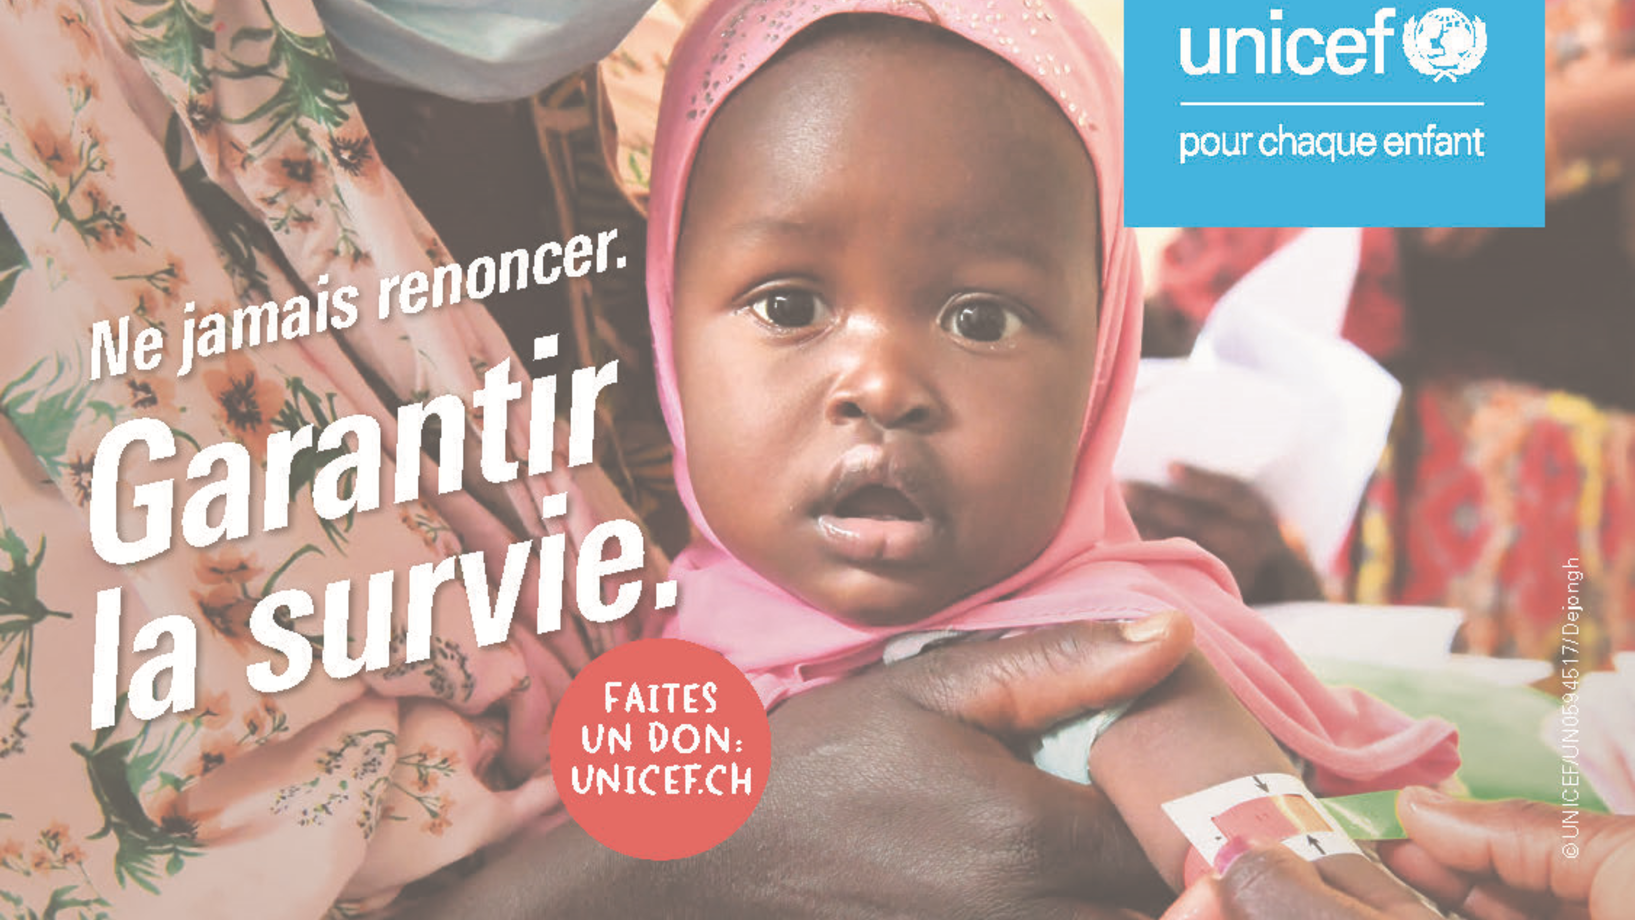 UNICEF_AZ_Fueller_Hunger_143x90mm_quer_klein_FR.png